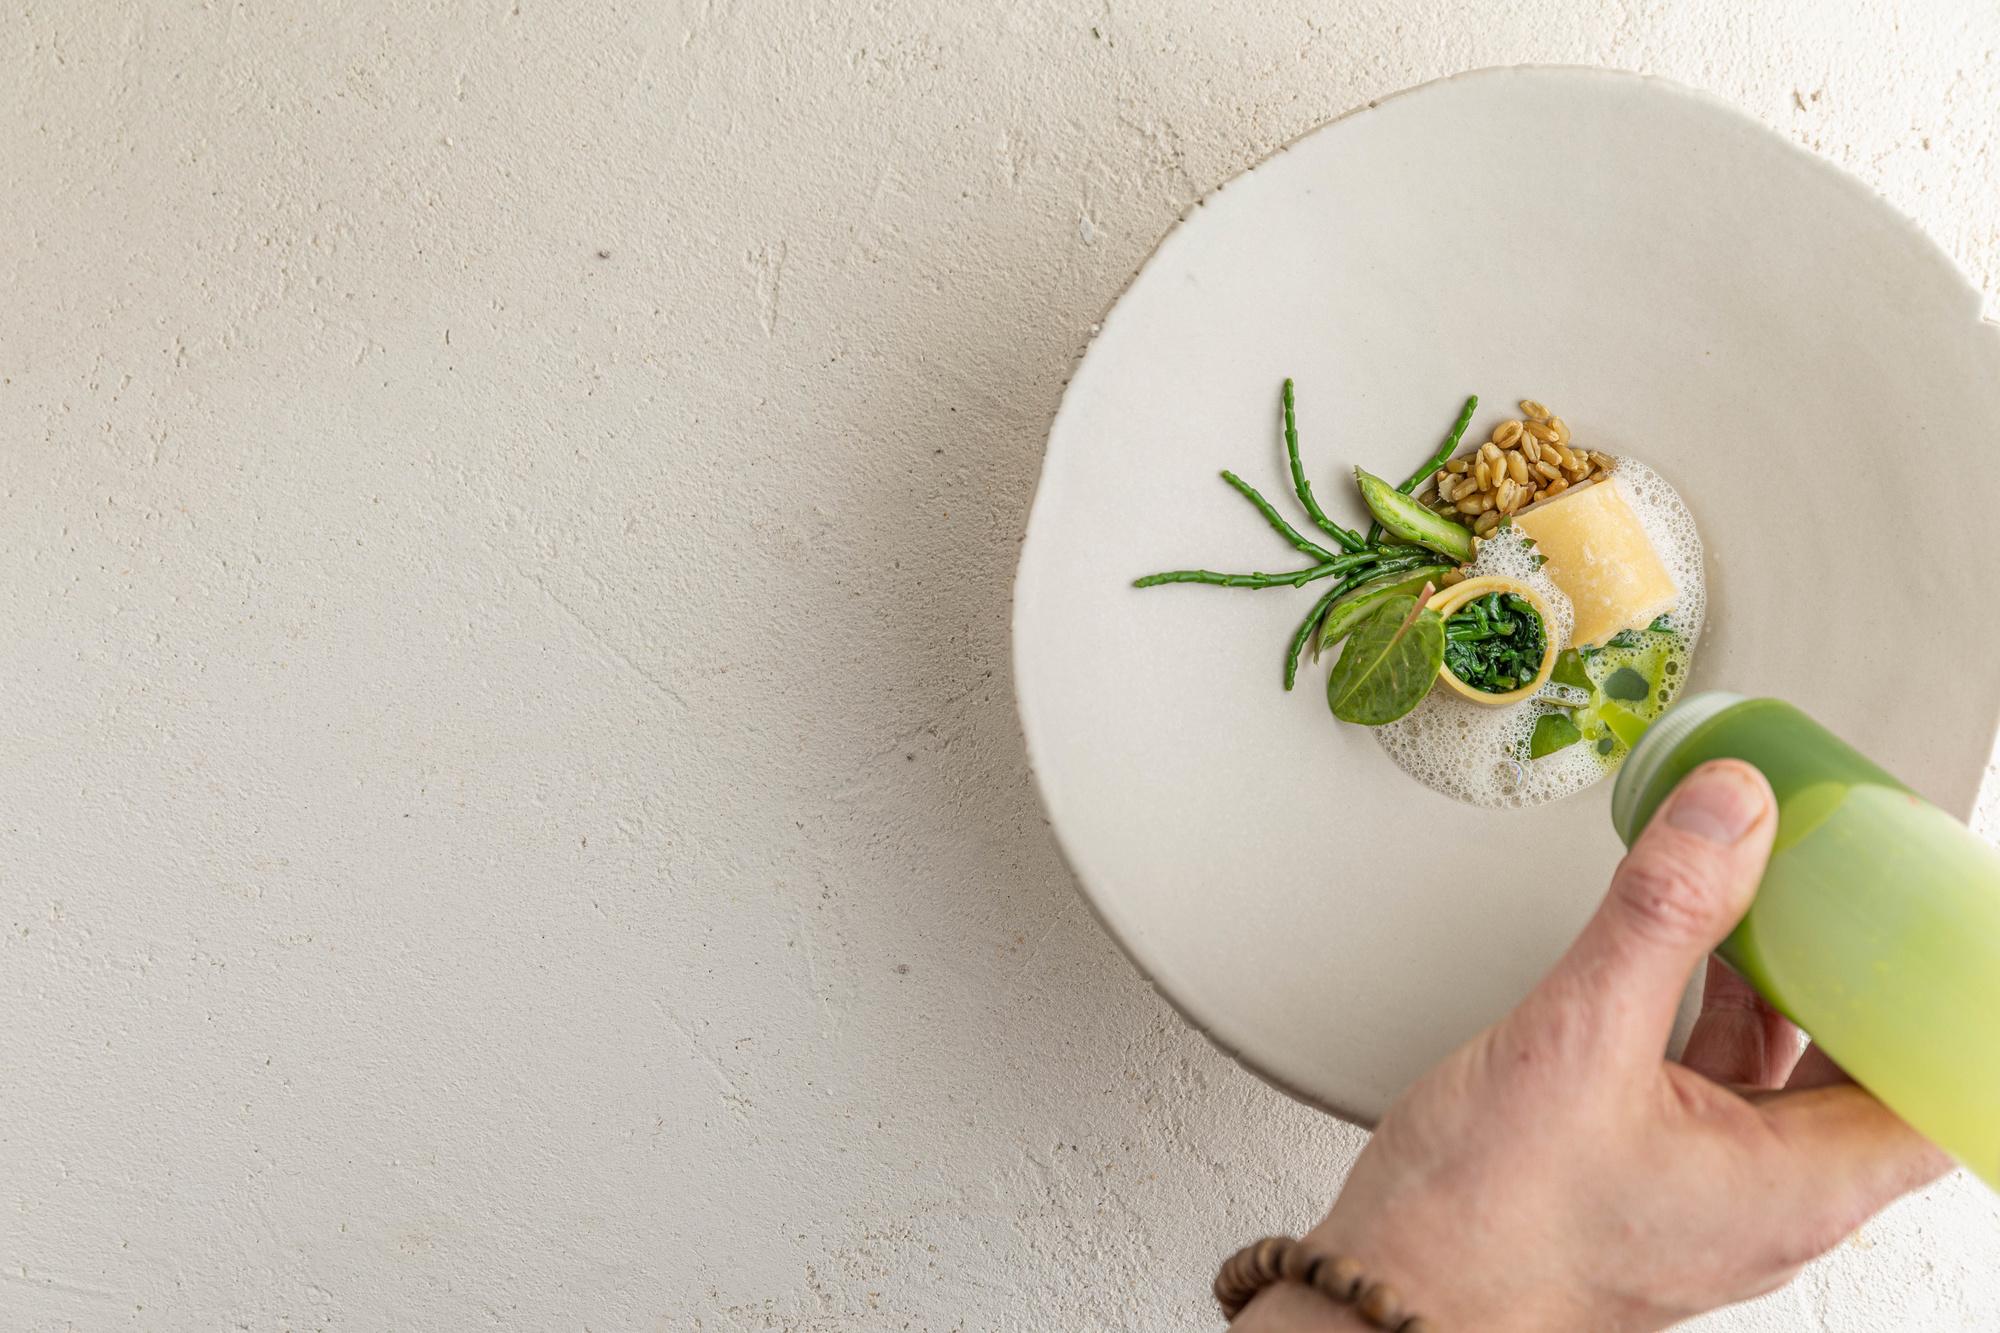 Gloednieuw restaurant Amaranth bewijst dat fine dining ook vegan kan: 'We brengen een boodschap vol leven'